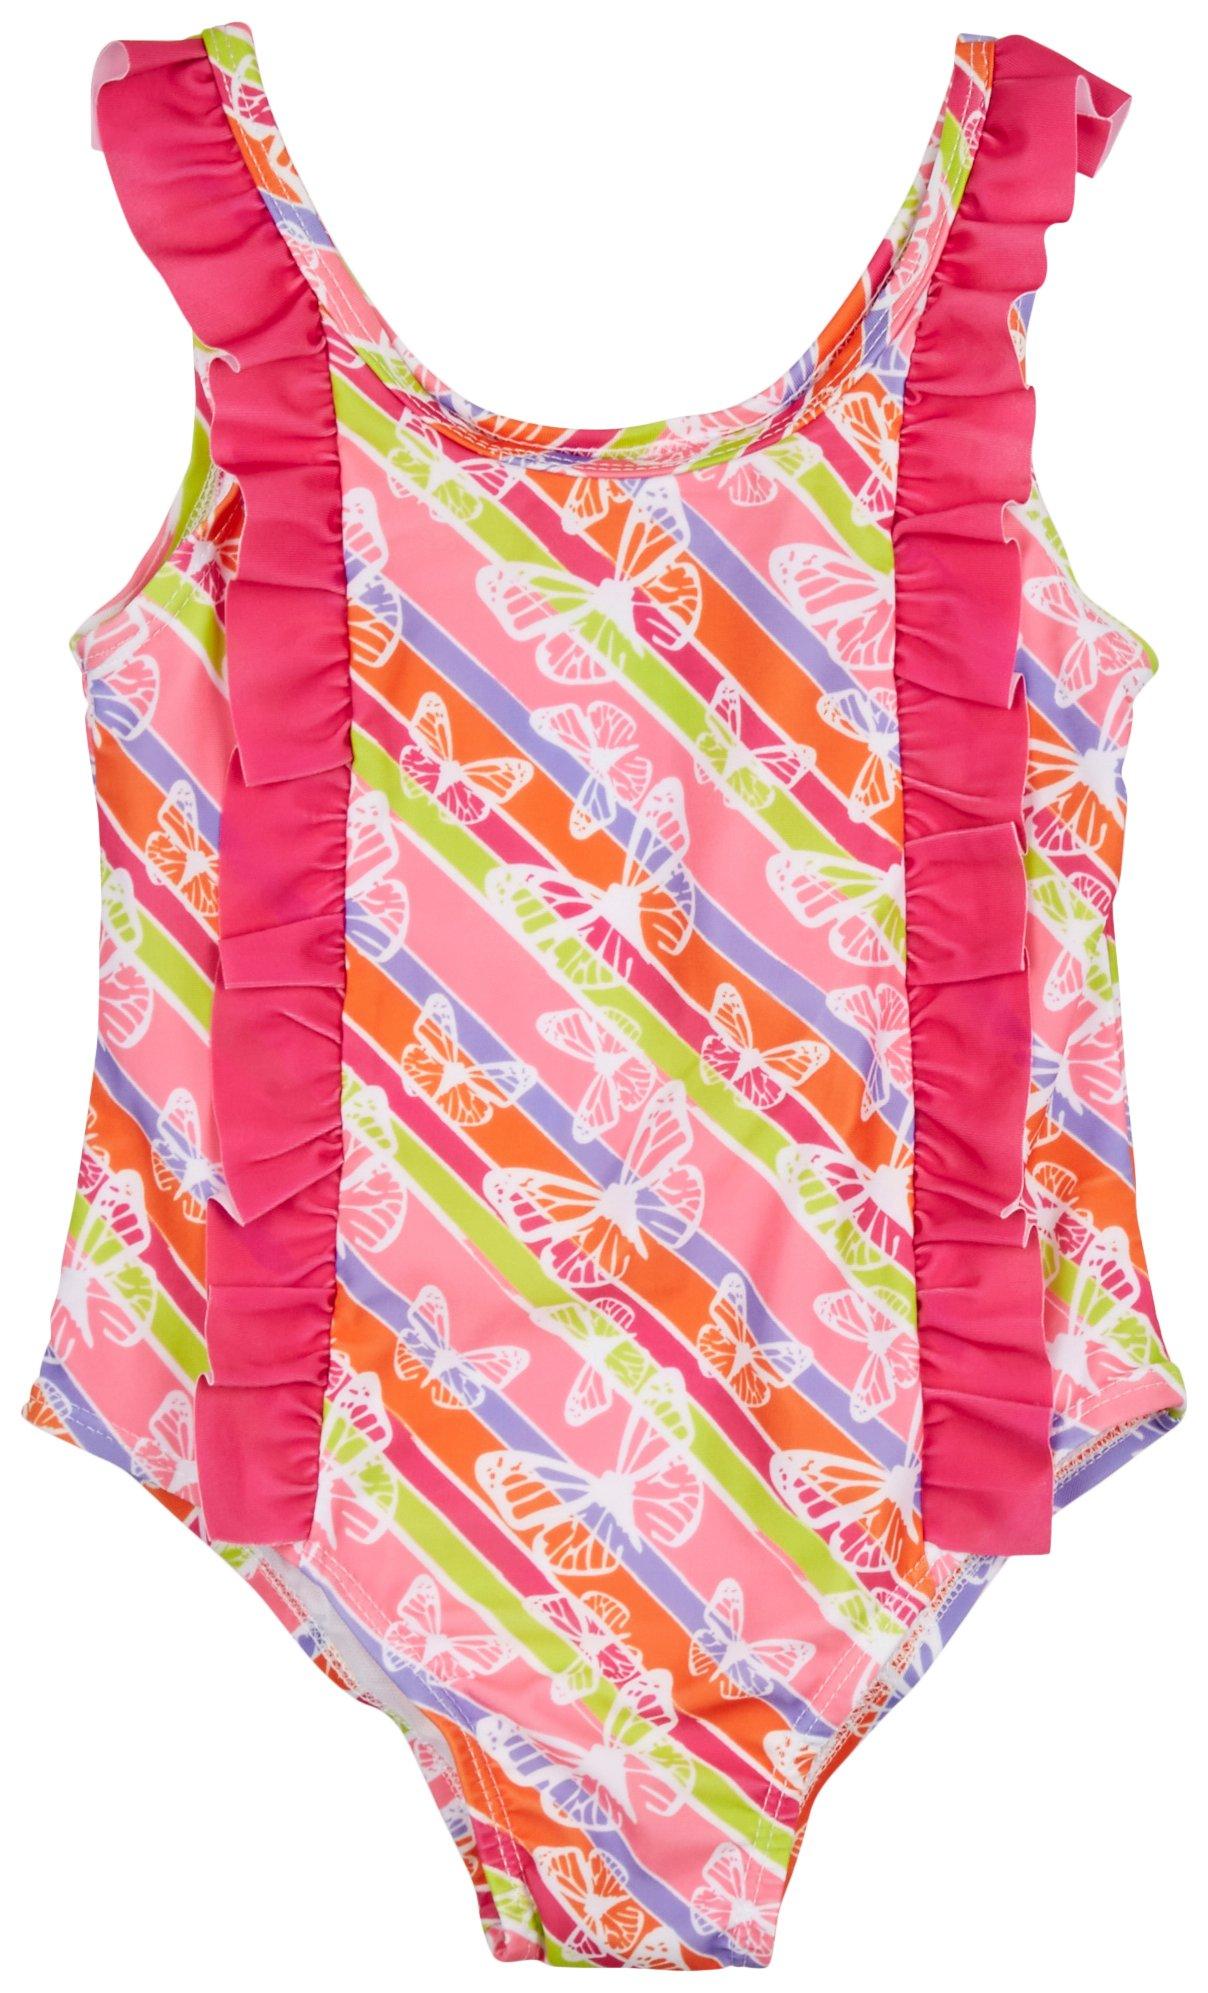 Little Girls 1 Pc. Butterfly Stripe Swimsuit